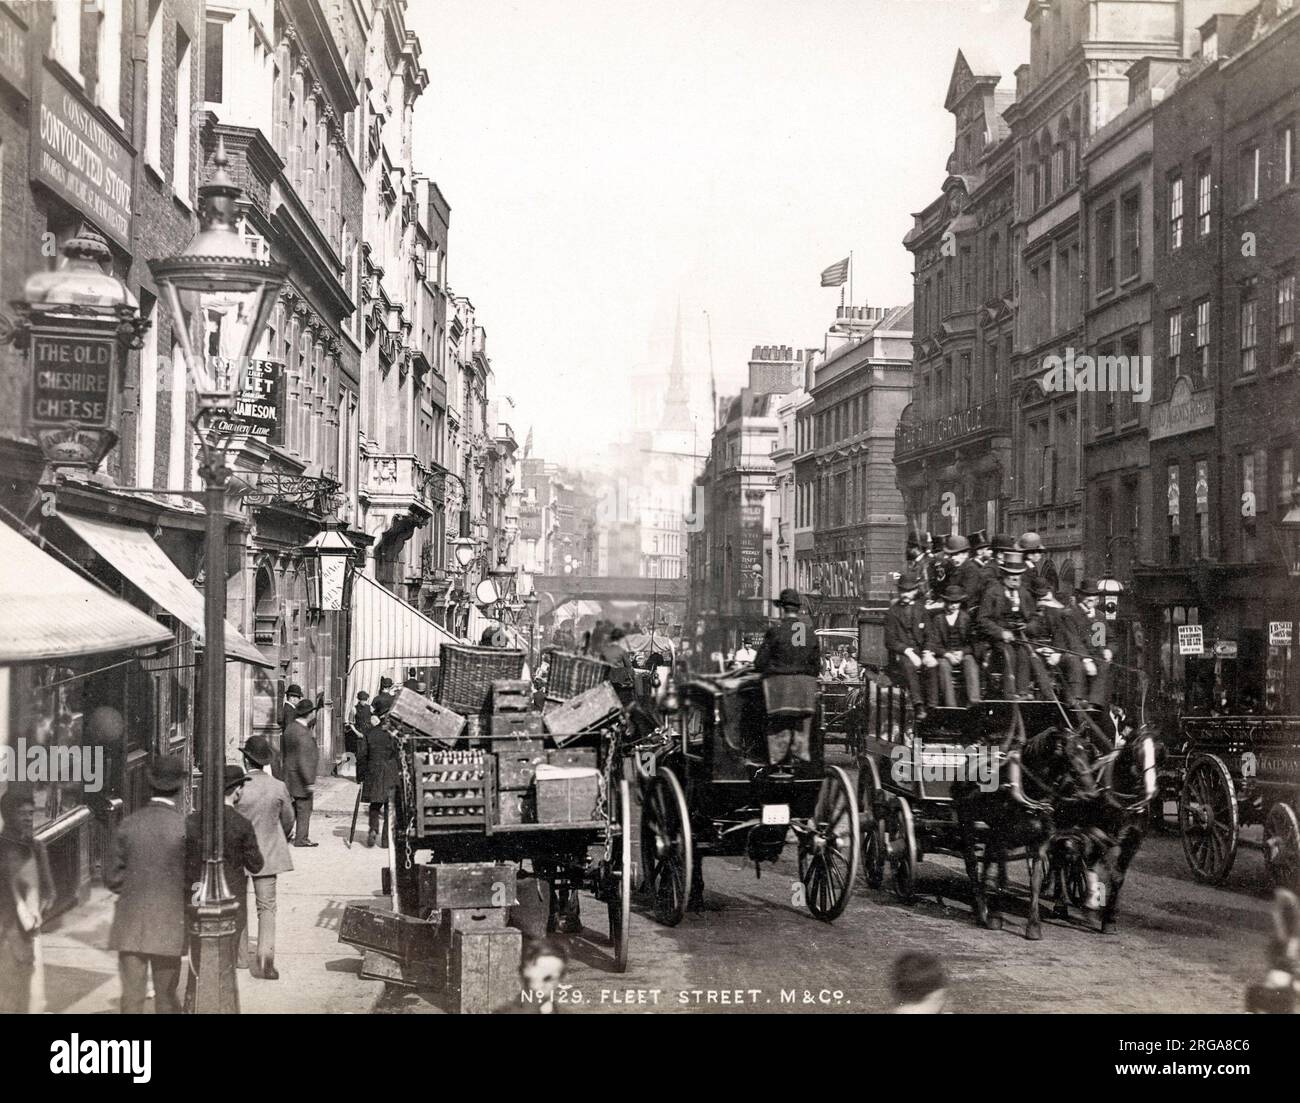 Vue le long de Fleet Street Londres, étouffé par la circulation à cheval. Photographie vintage du 19th siècle Banque D'Images